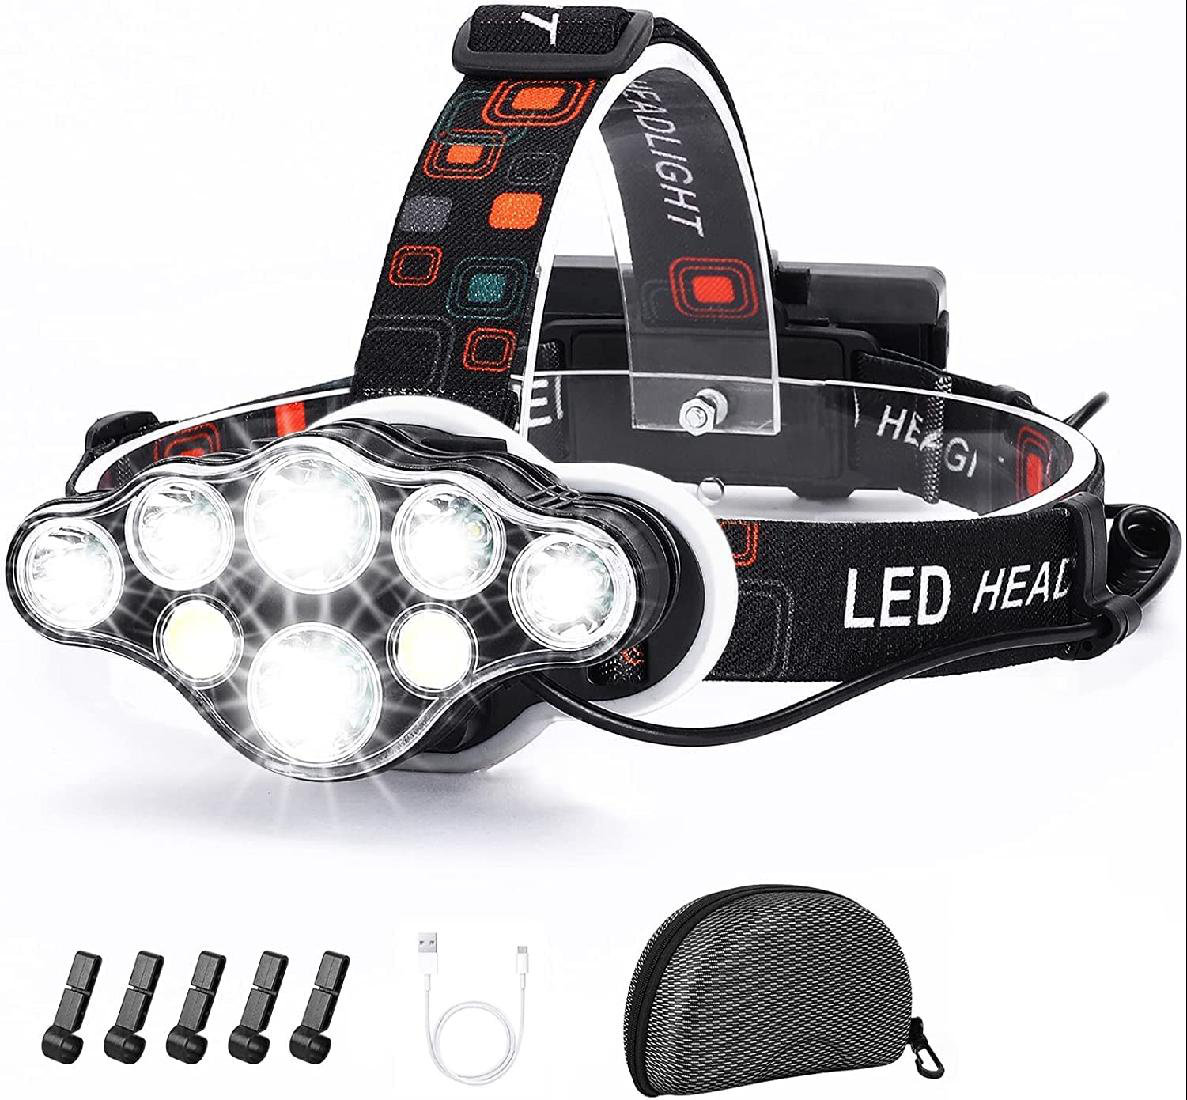 » Elastic Head Strap Mount for LED Headlamp Black for a wide range of lights 